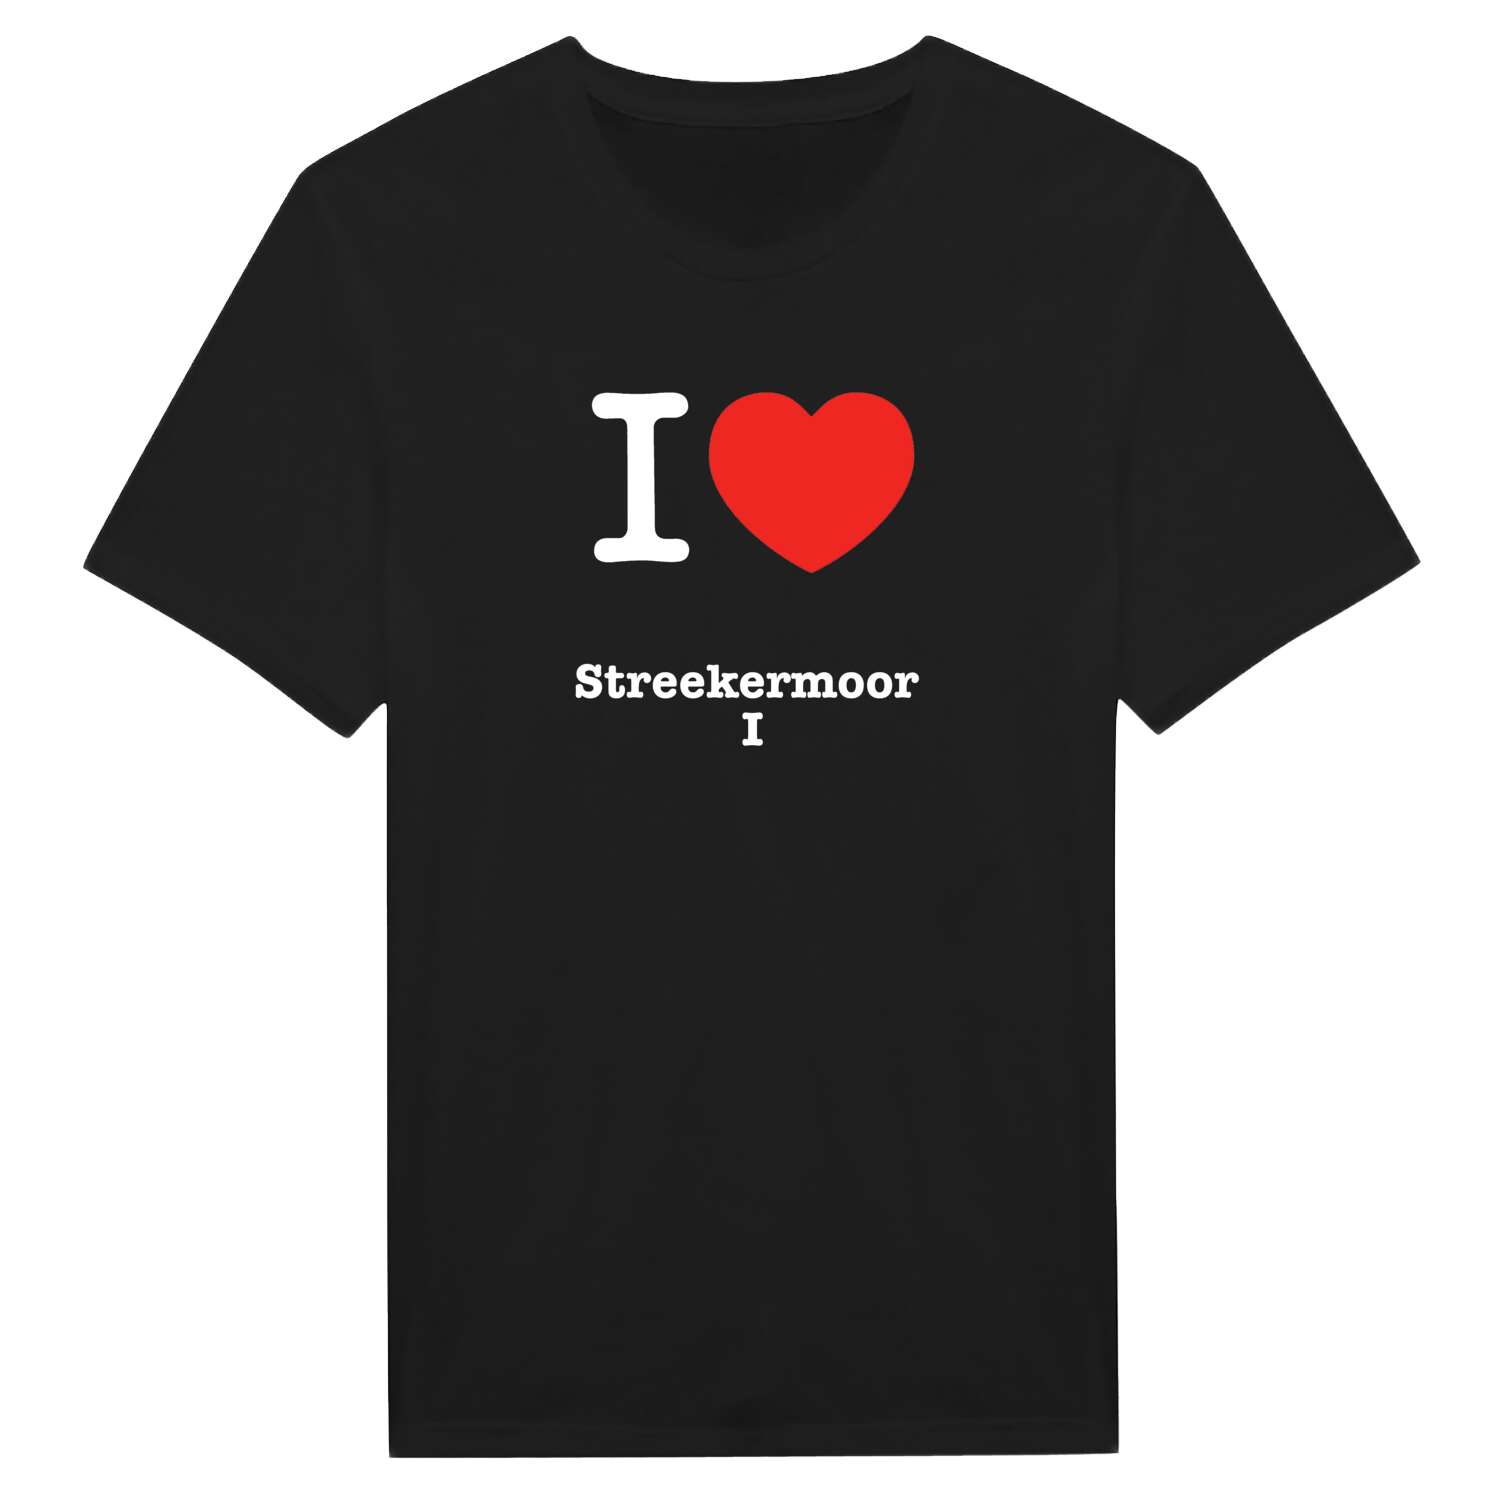 Streekermoor I T-Shirt »I love«